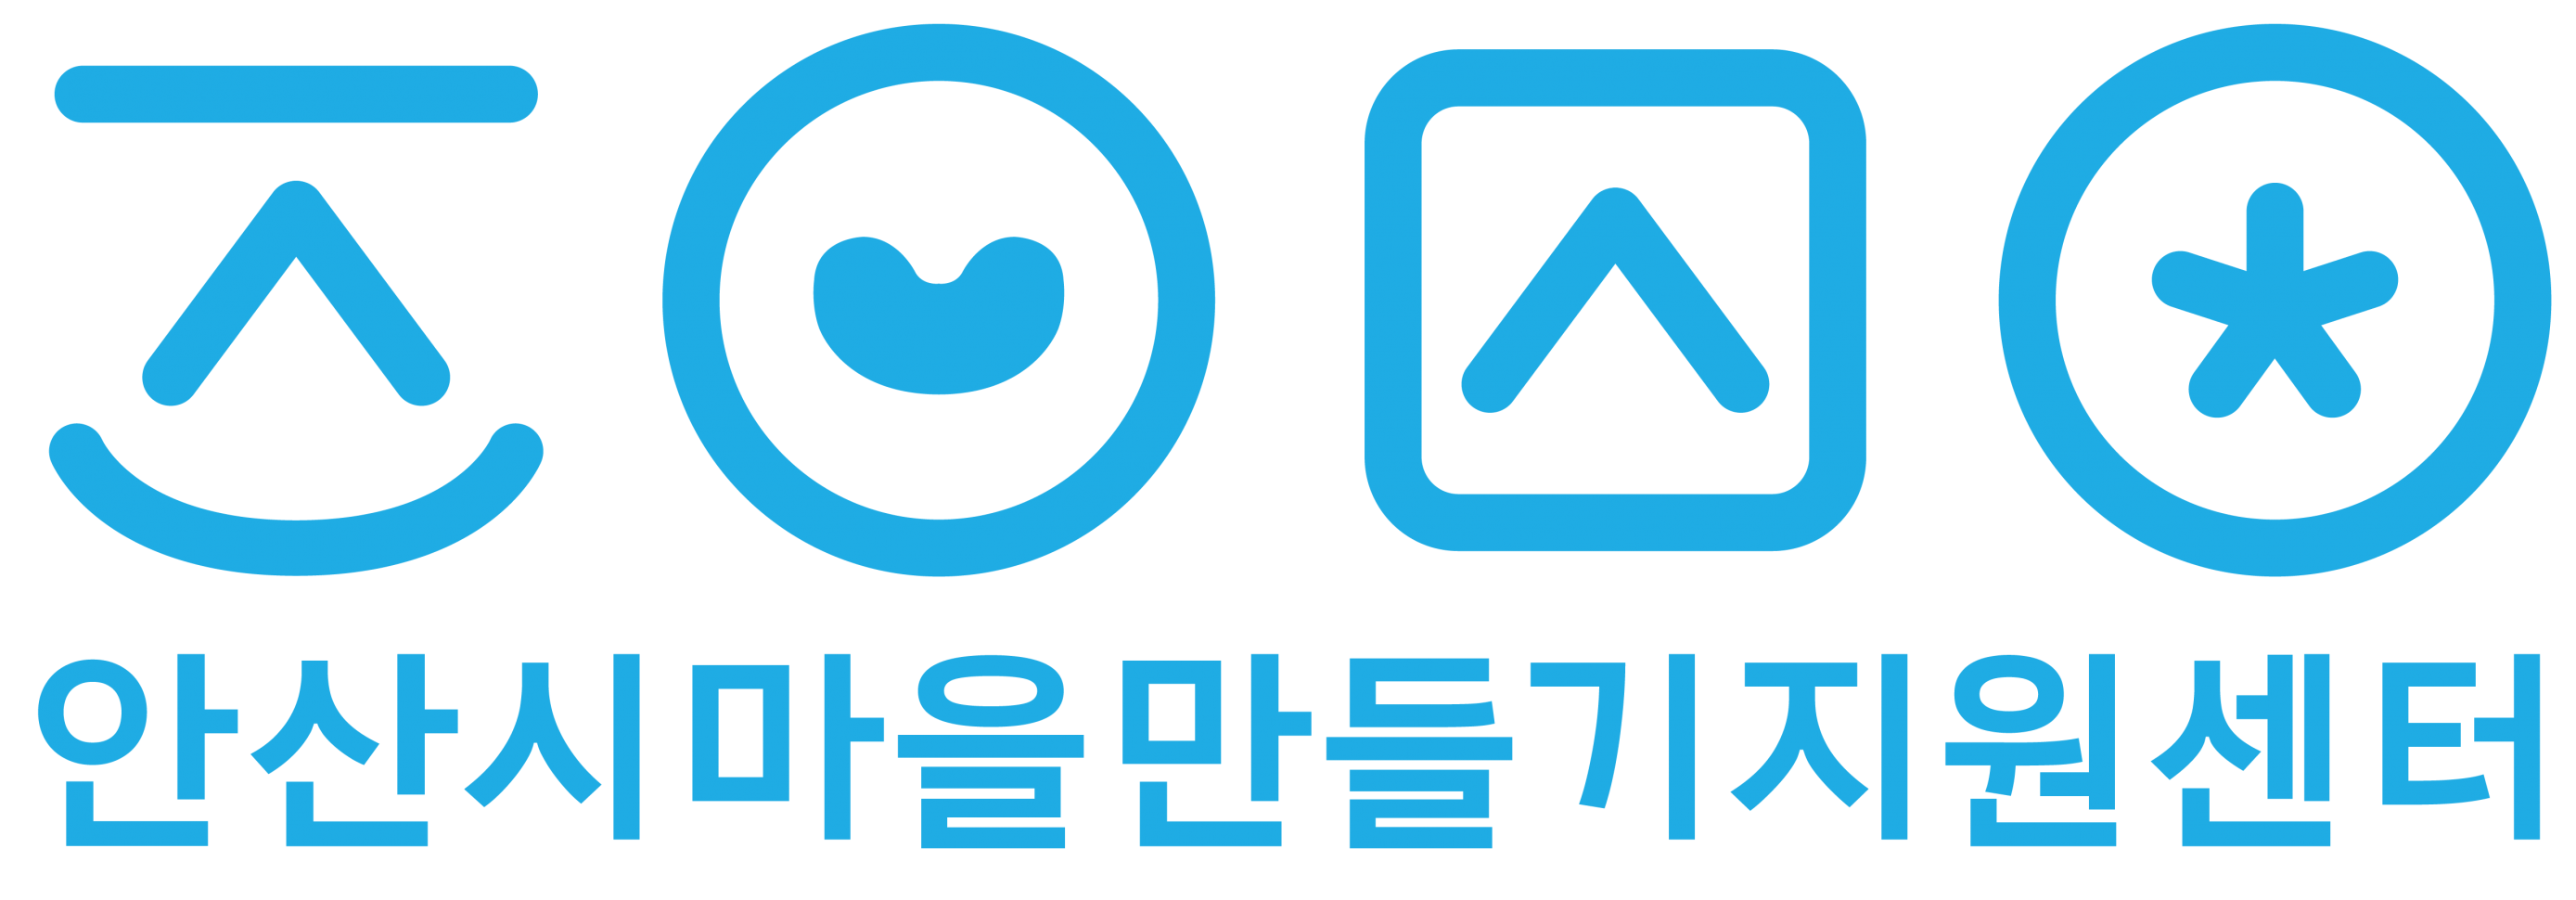 안산시마을만들기지원센터_로고(원본).png